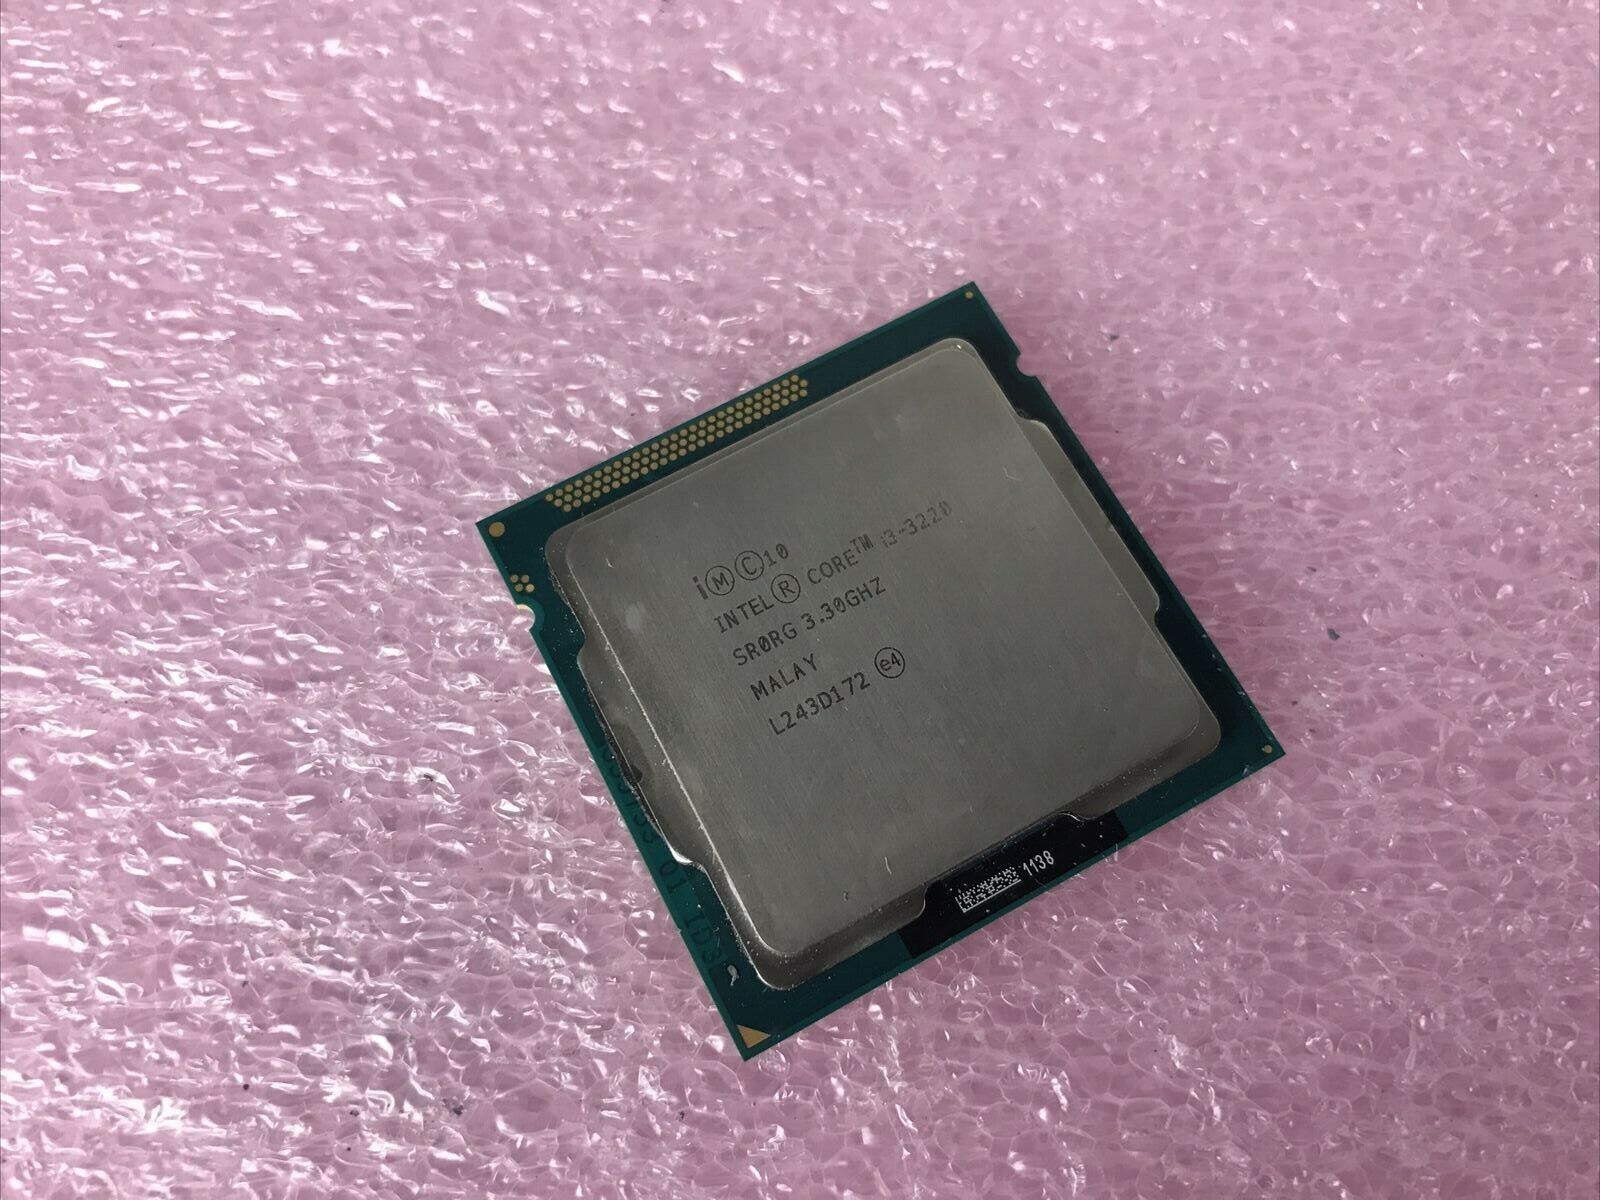 Intel Core i3 3220 3.30GHz Dual Core CPU Processor SR0RG